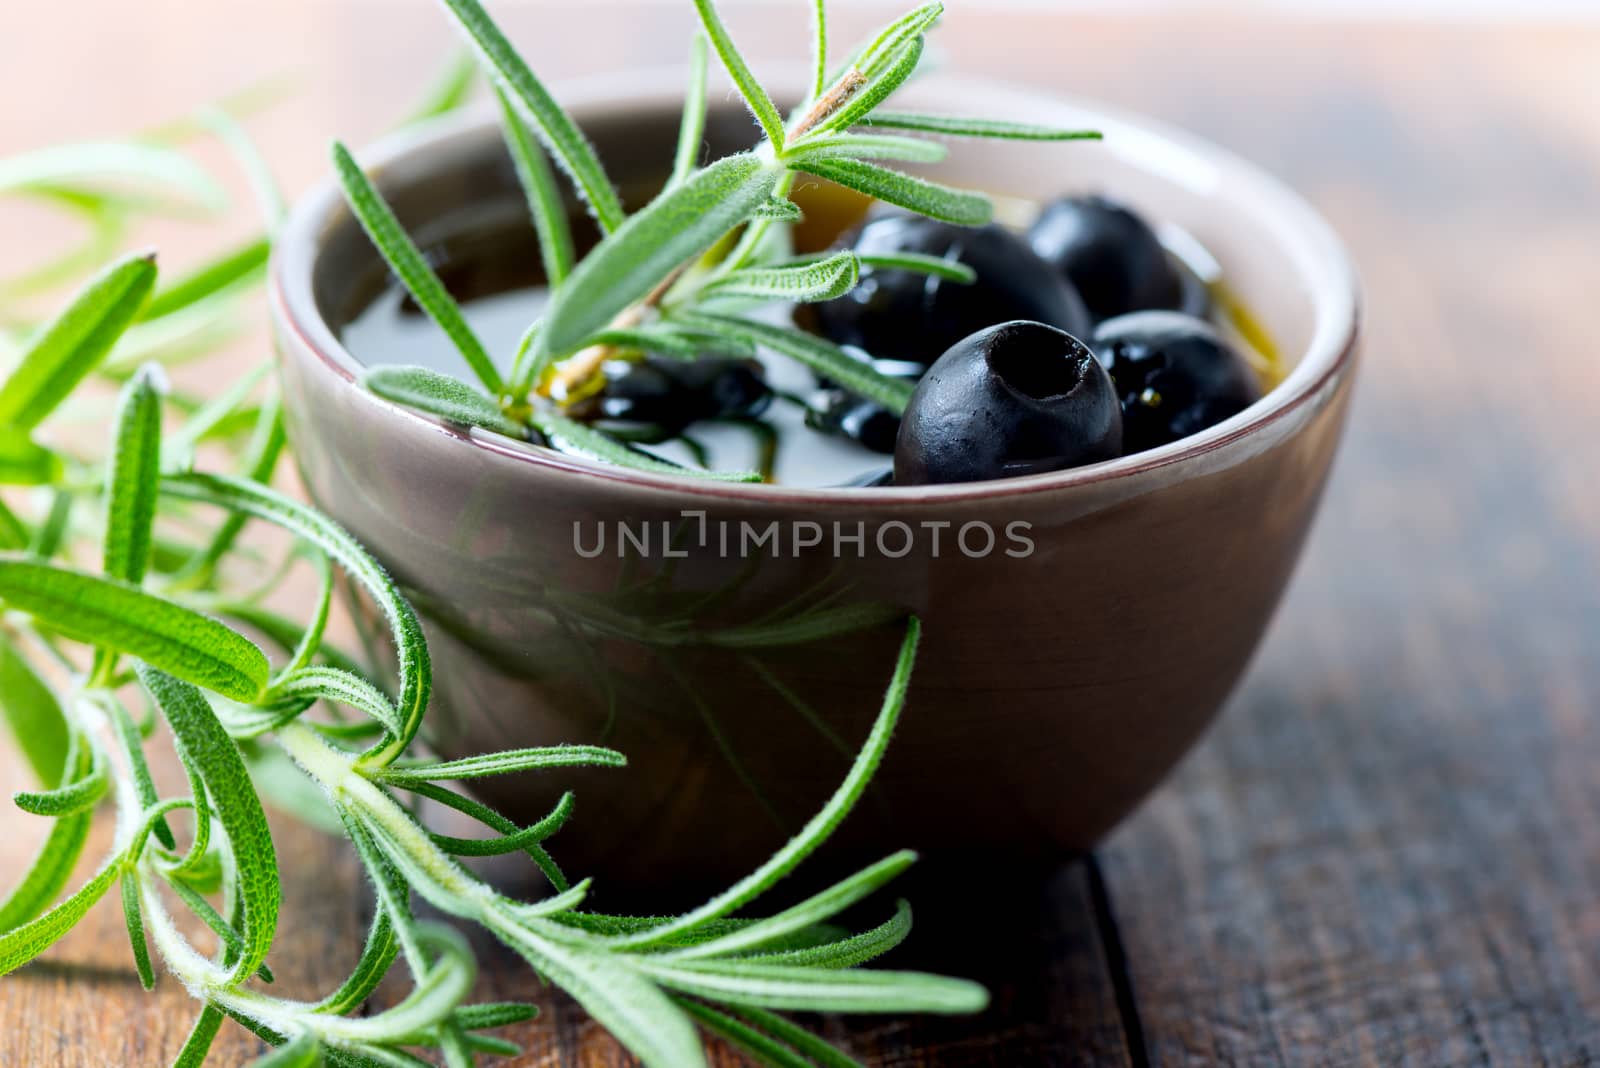 Black olives in bowl by Nanisimova